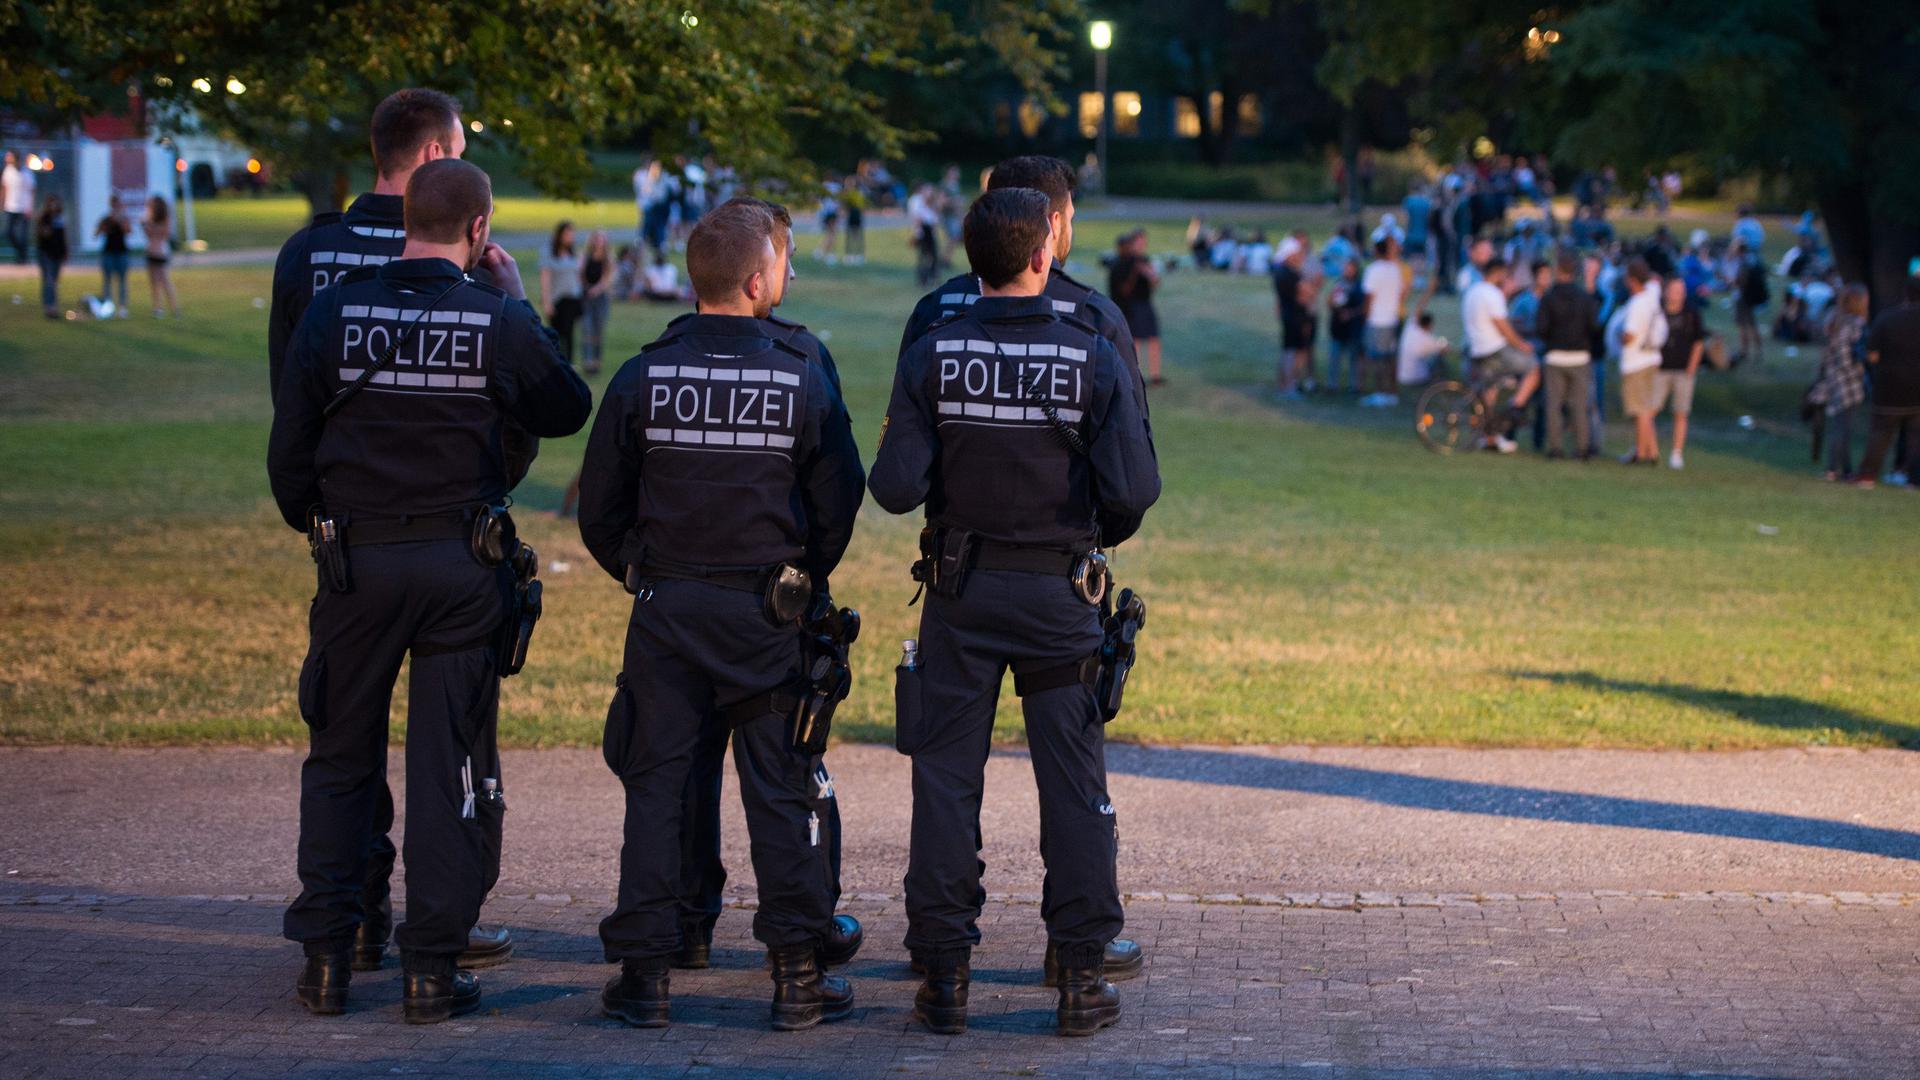 Die Polizei zeigt verstärkt Präsenz im Schlossgarten in dem Jugendliche während eines Stadtfestes am 17.07.2017 in Schorndorf (Baden-Württemberg) feiern. Foto: Deniz Calagan/dpa +++(c) dpa - Bildfunk+++